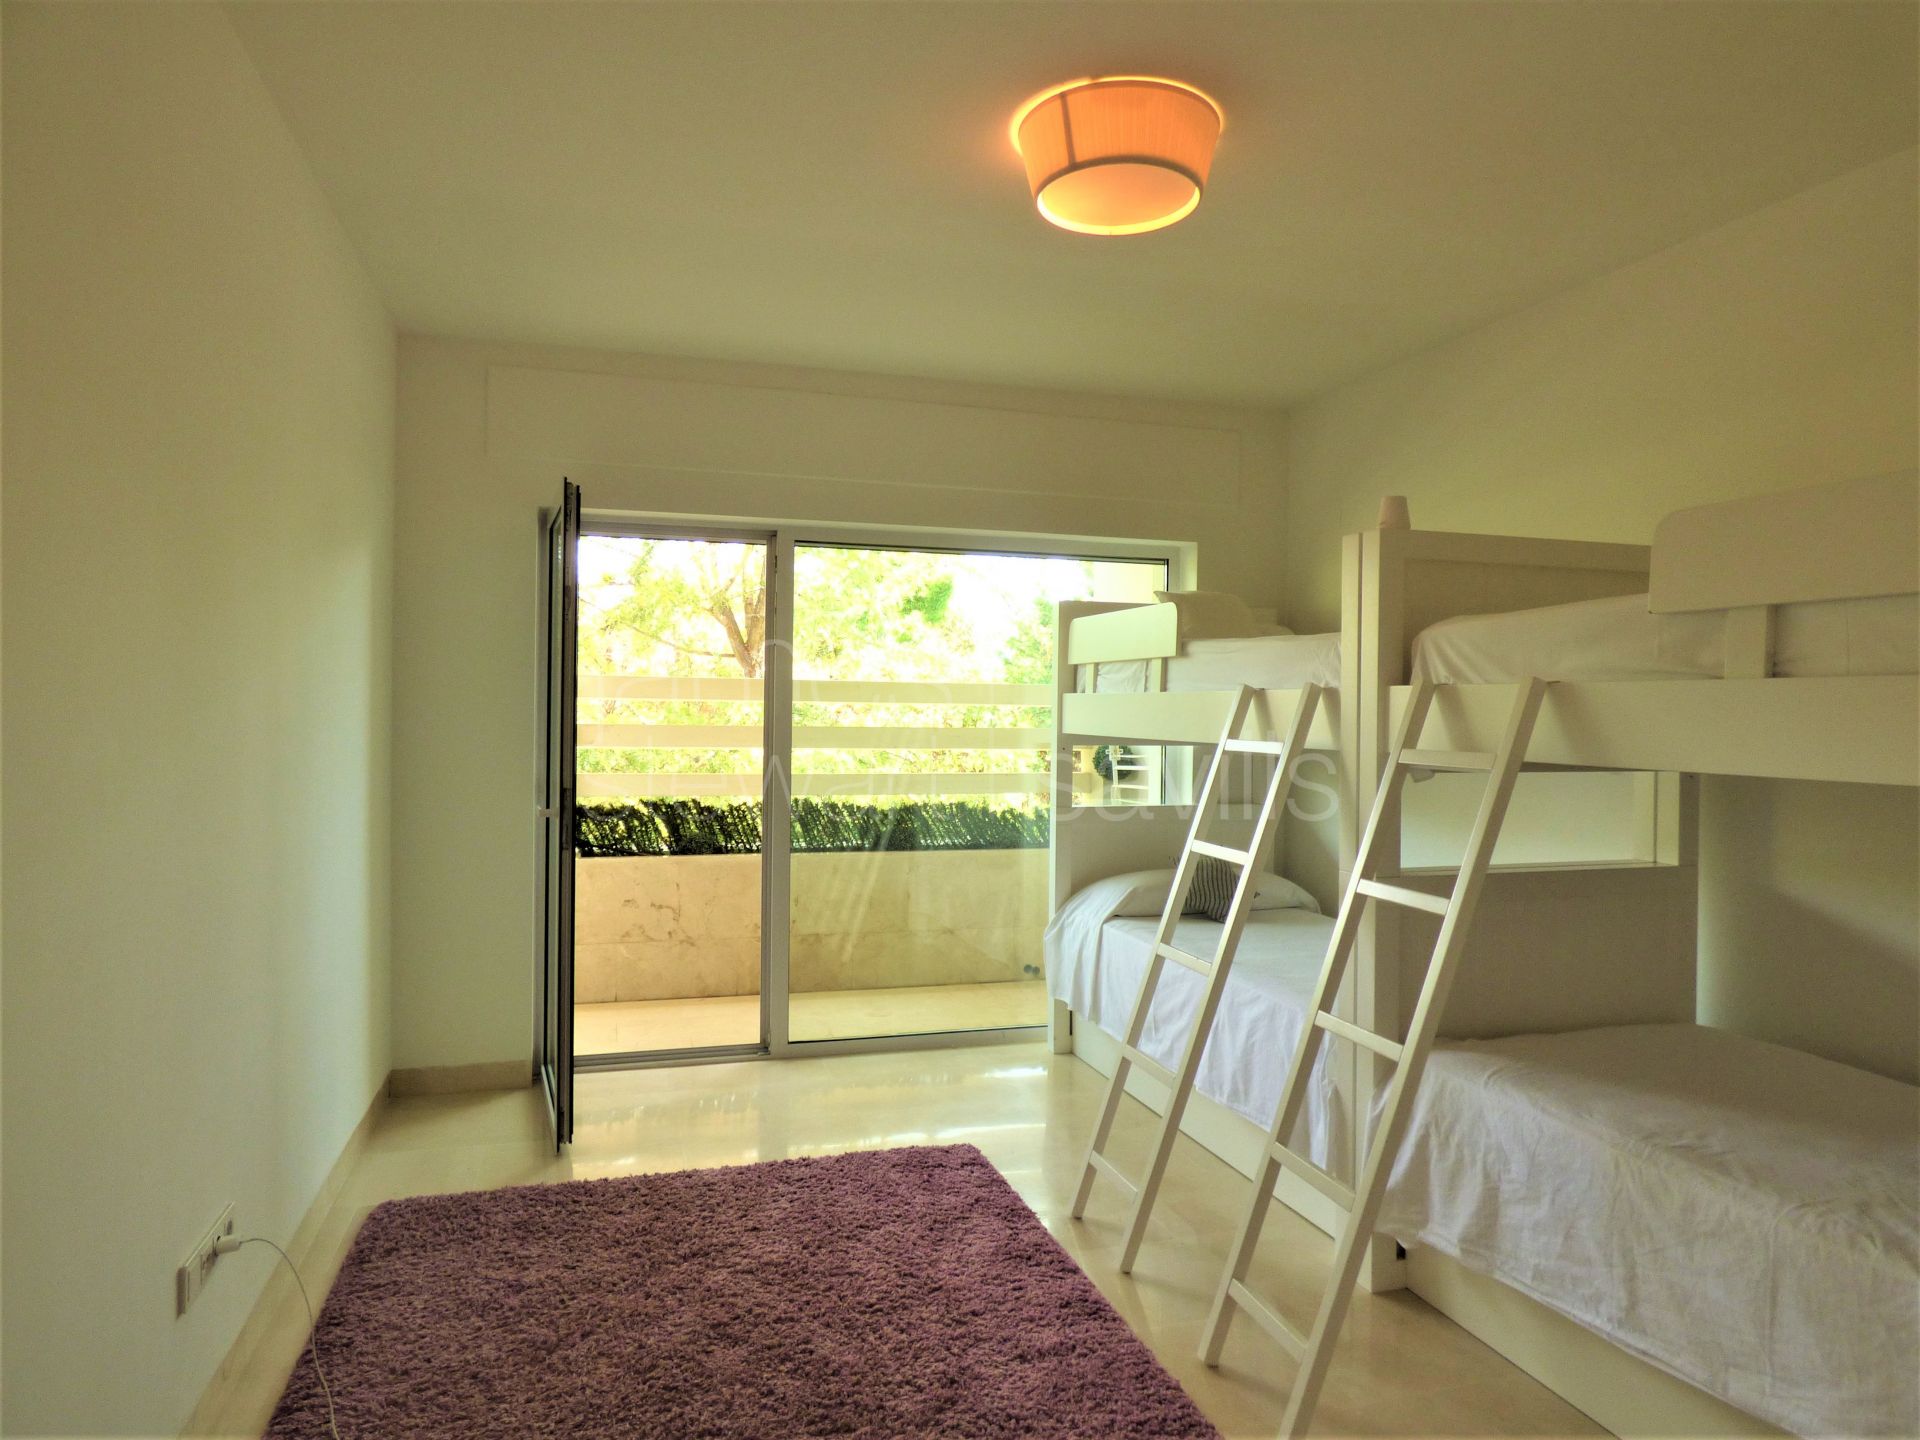 Spacious 4 bedroom apartment in Polo Gardens, Sotogrande Costa